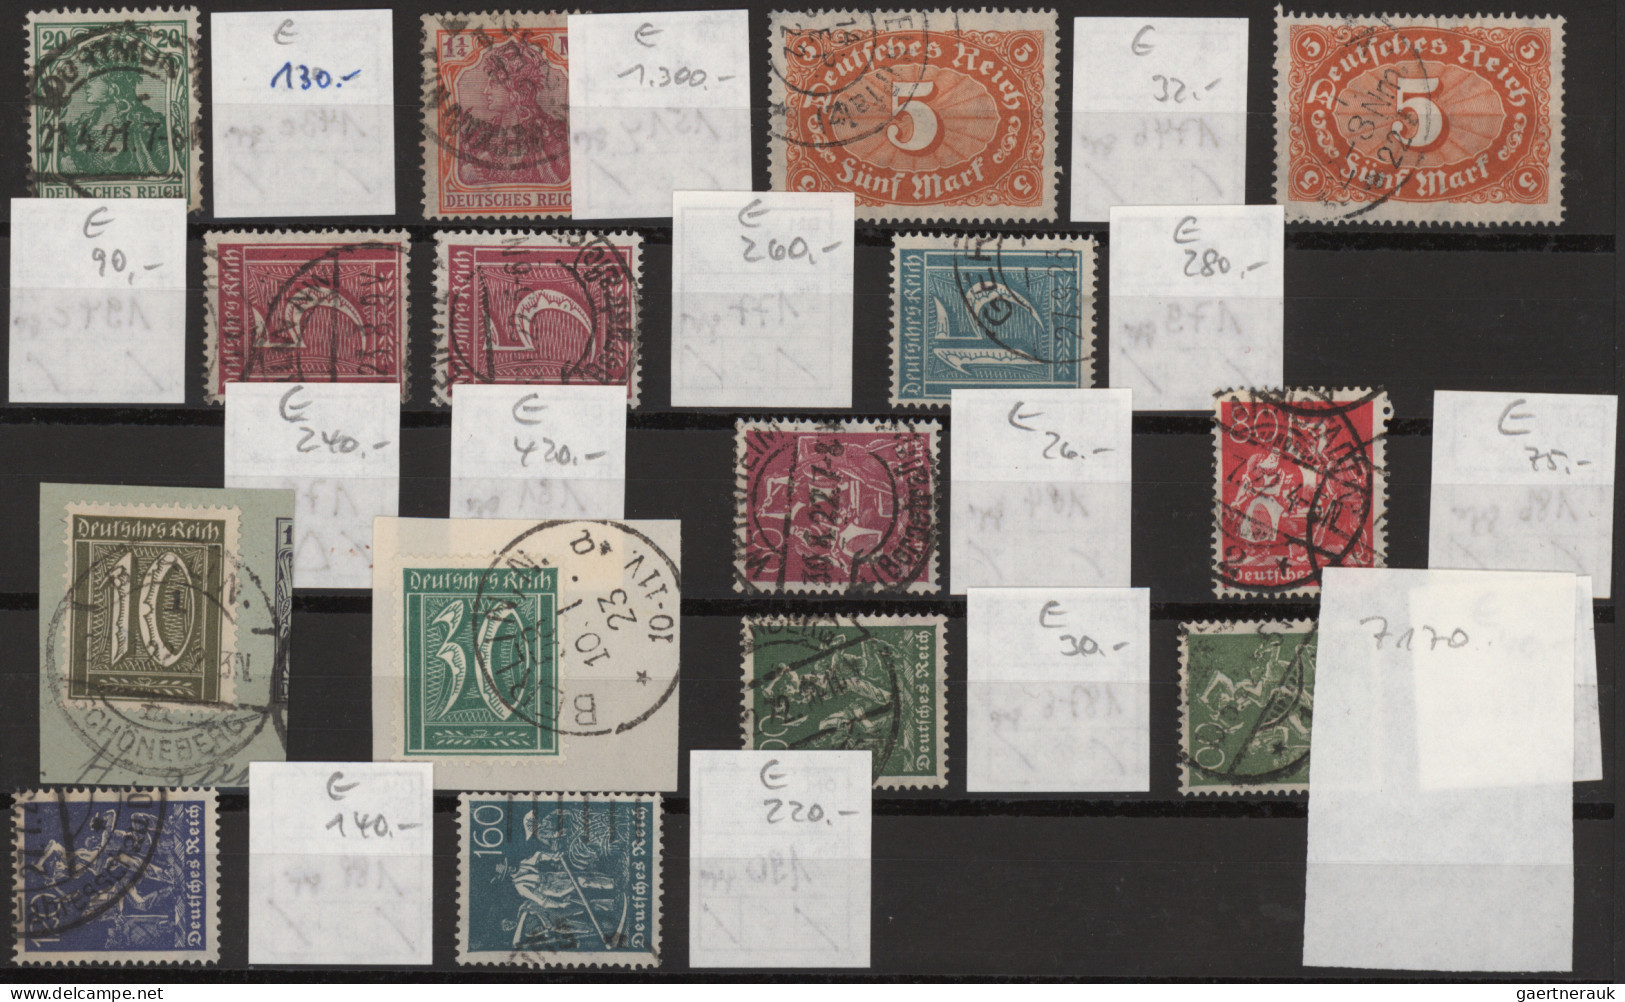 Deutschland: 1872/1955, Leuchtturm Steckkartenkiste mit 60 Steckkarten mit sehr